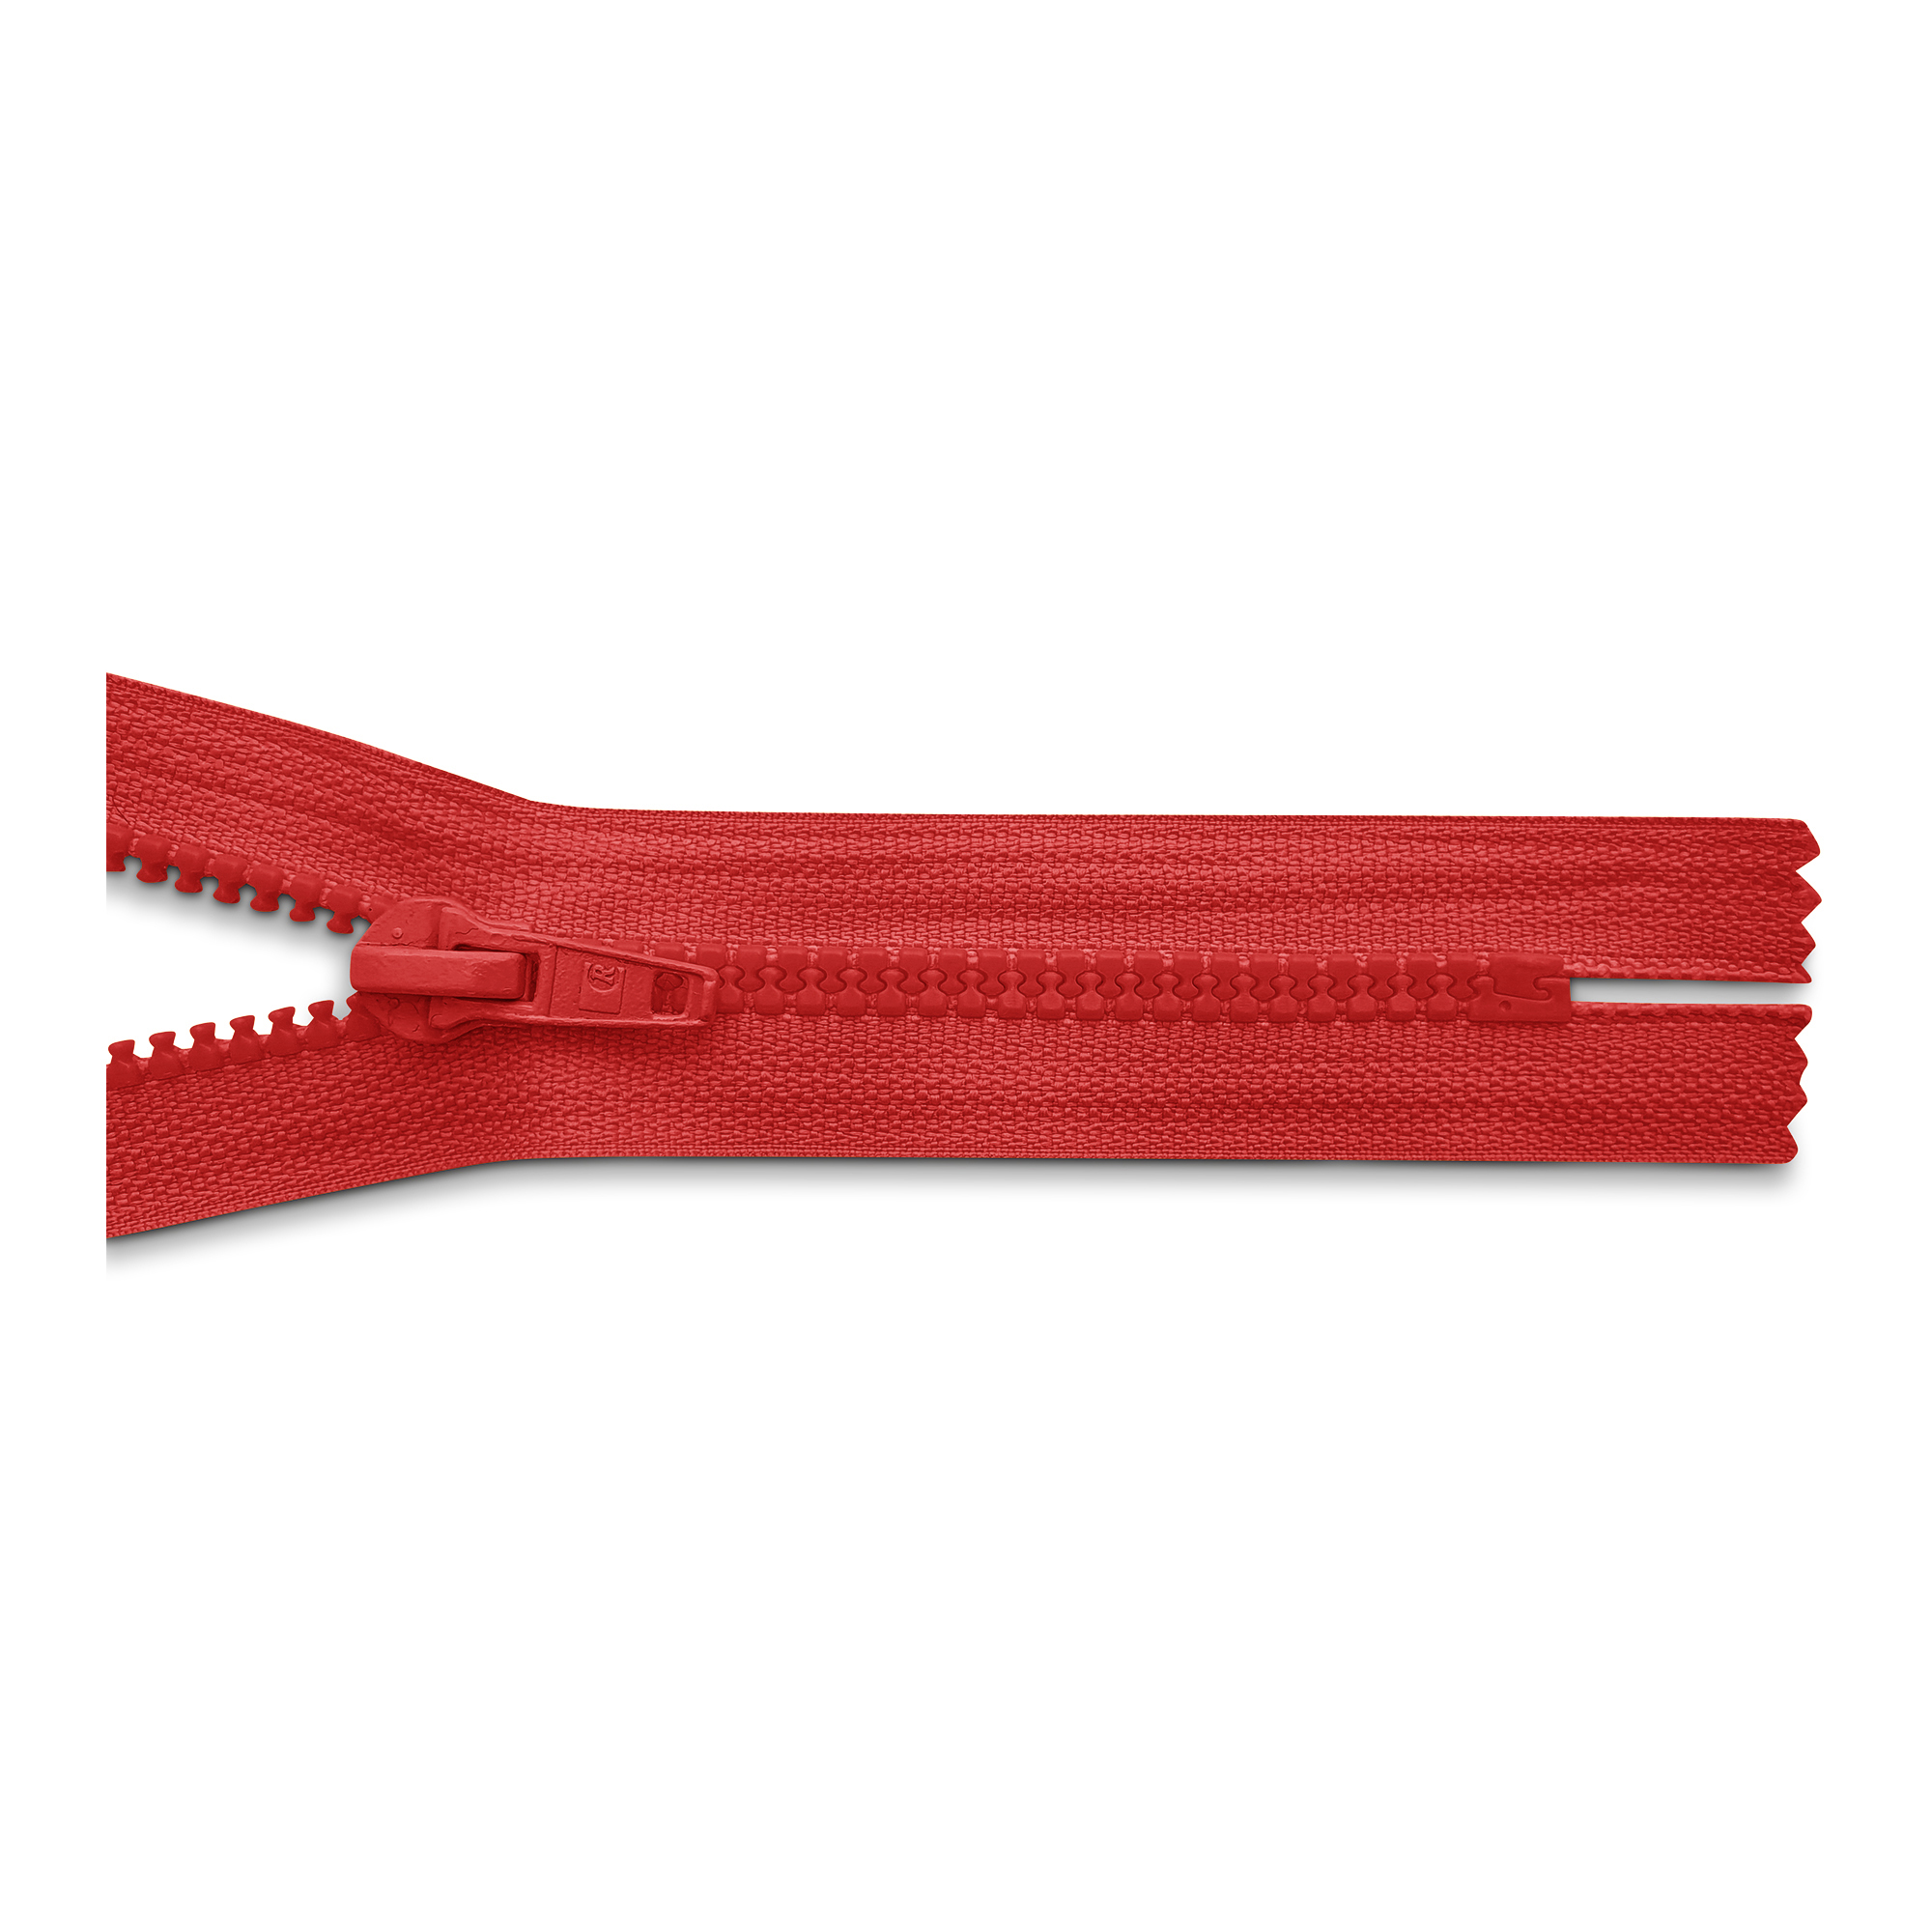 Reißverschluss, nicht teilbar, K.stoff Zähne breit, chili, hochwertiger Marken-Reißverschluss von Rubi/Barcelona